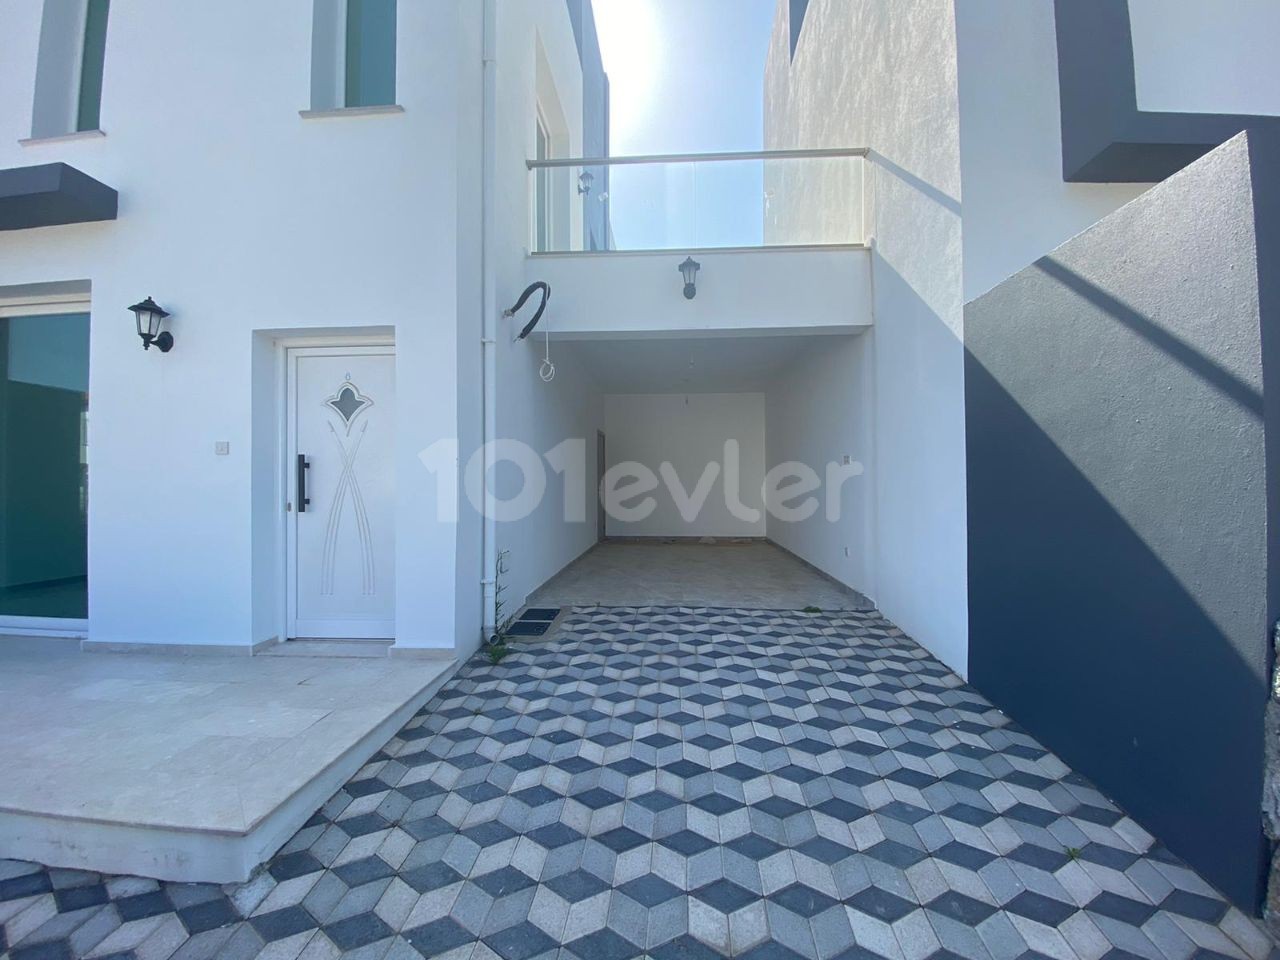 2+1, 140 m2 + 45 m2 Terrasse Villen zum Verkauf in Kyrenia Karsiyaka zu Preisen von 115.000 STG !!! ** 